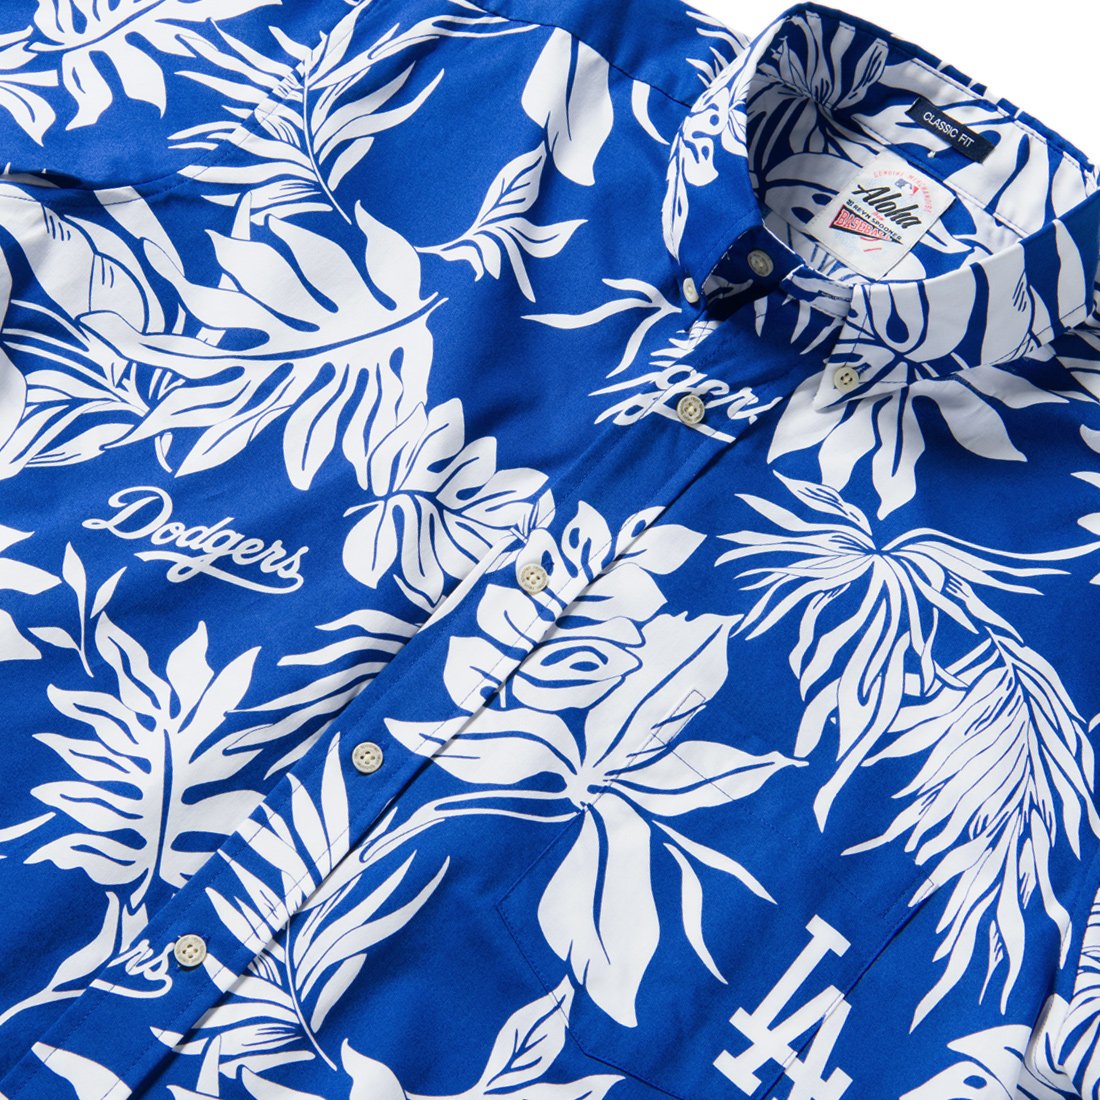 L.A. Dodgers Reyn Spooner Hawaiian Shirts, Dodgers Reyn Spooner Shirt, Reyn  Spooner Merchandise